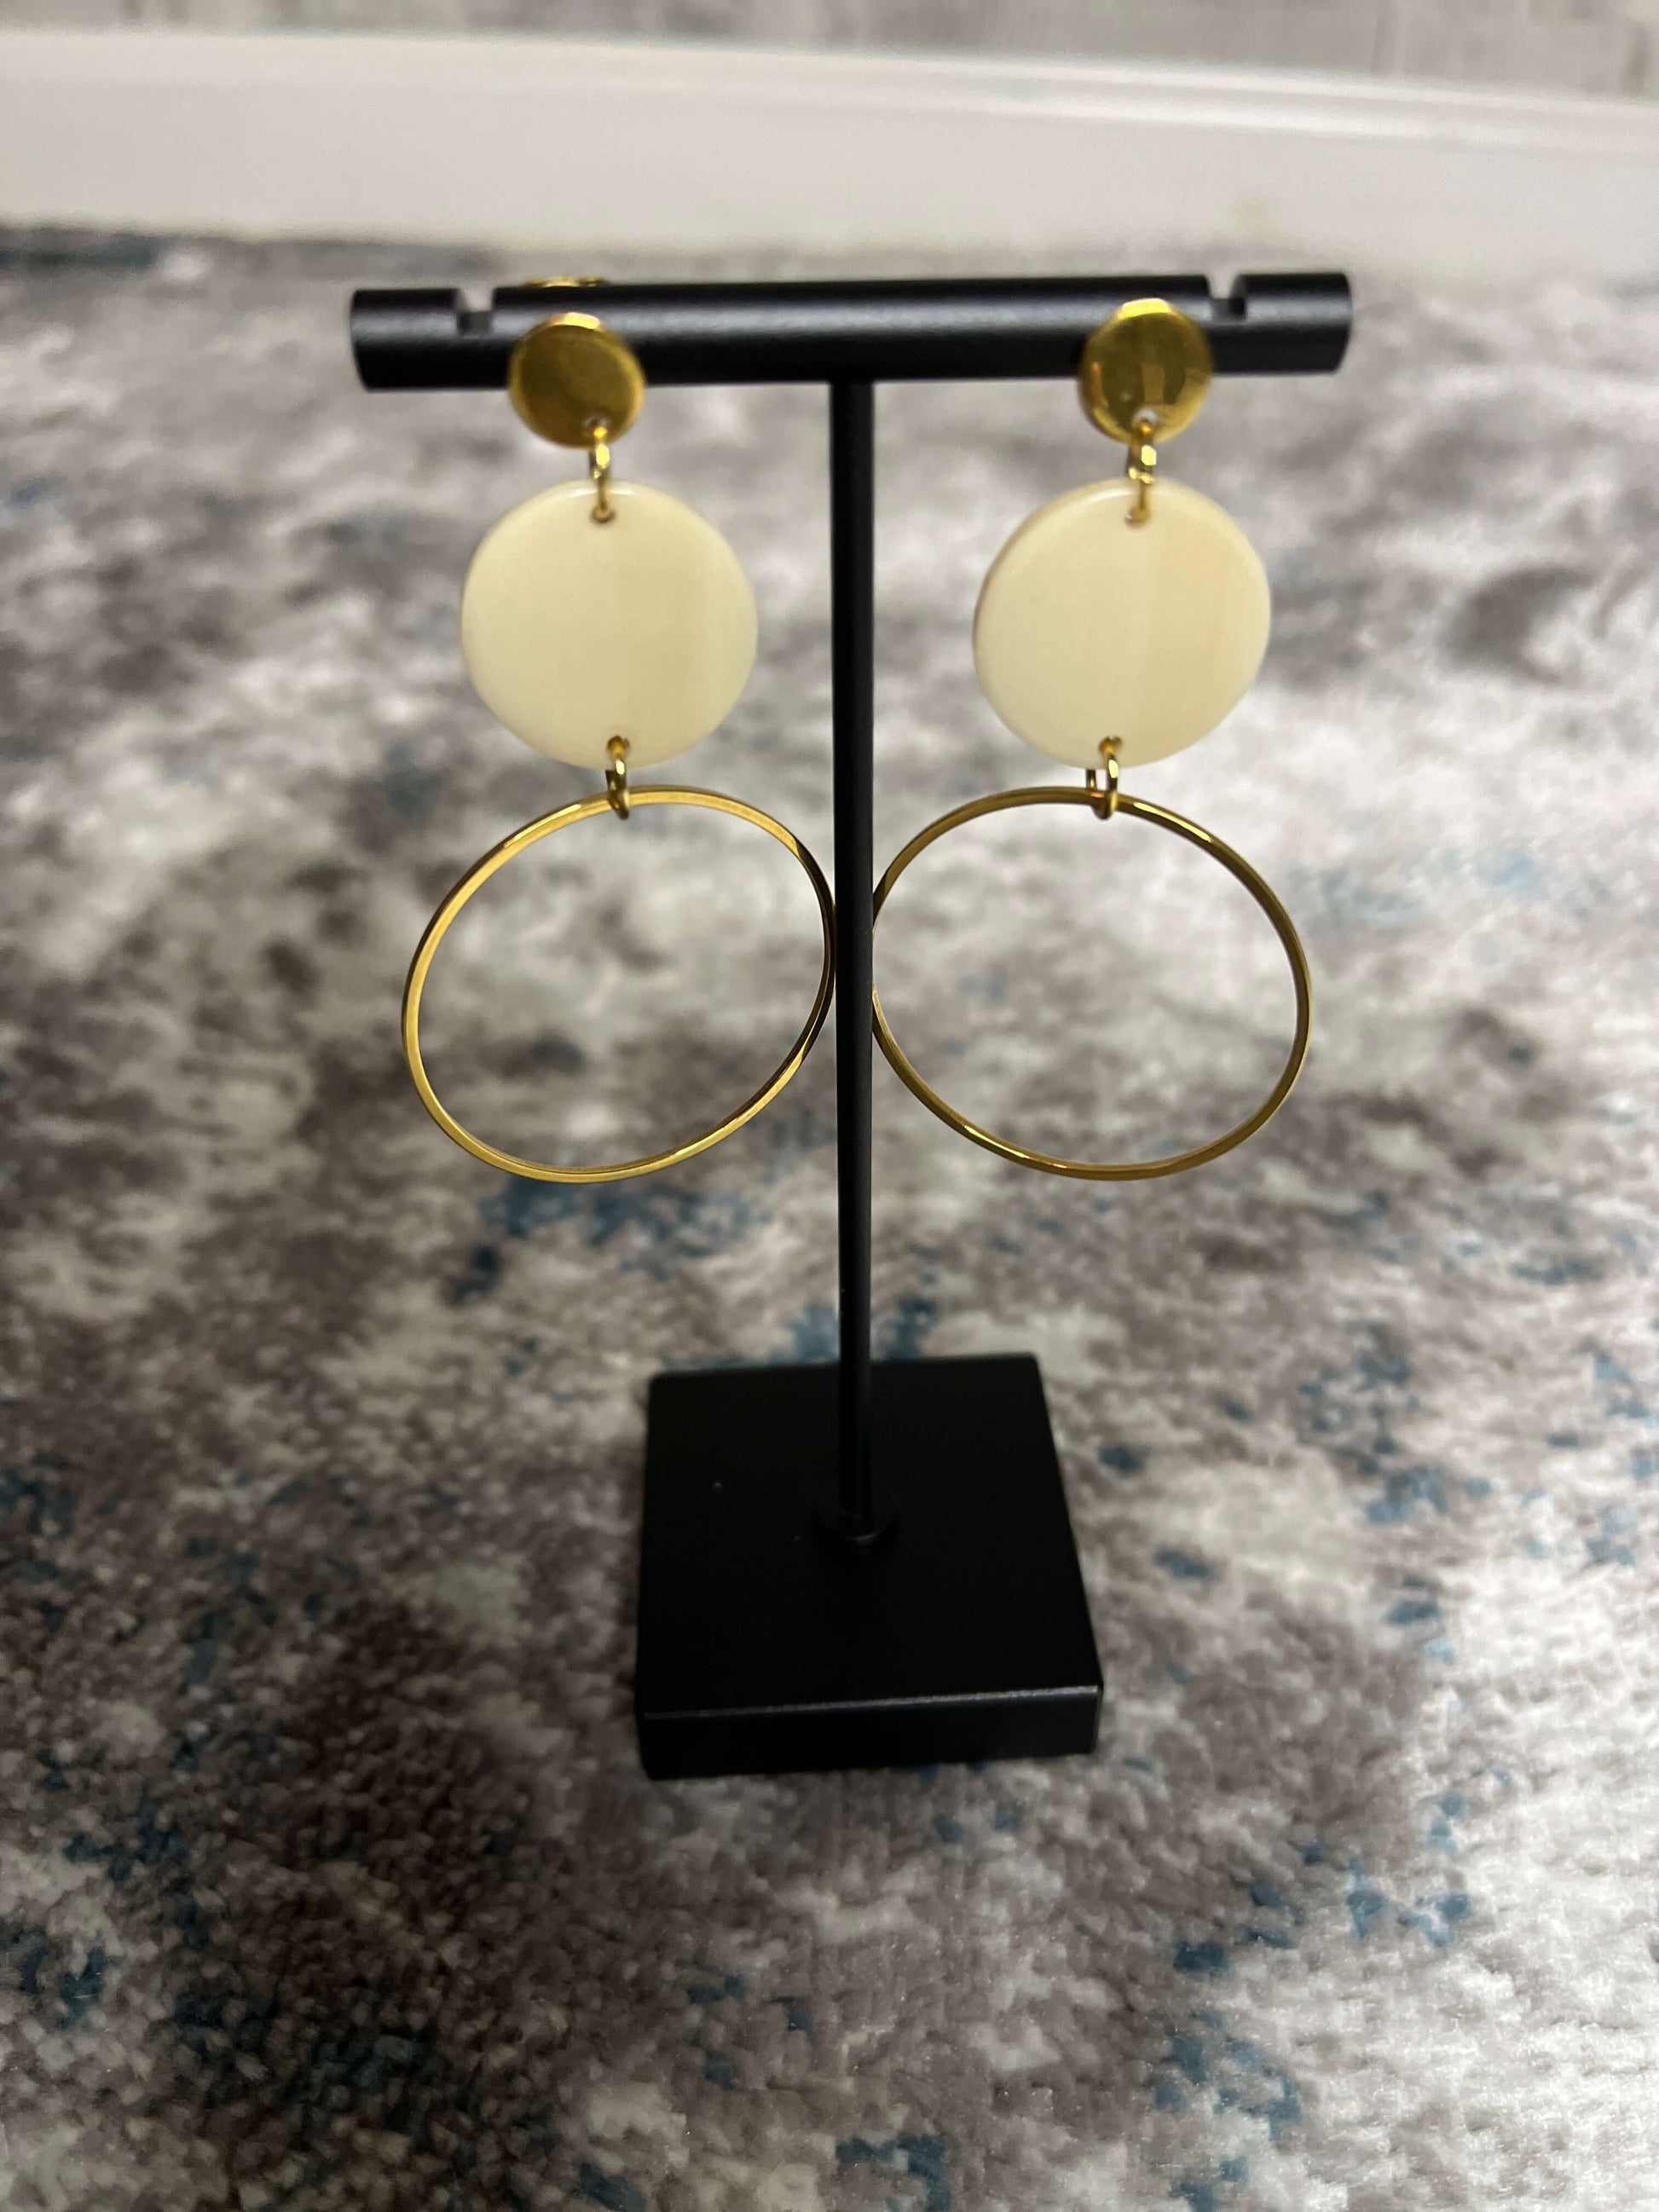 Earrings accessories, acrylic charm, earrings, gold-plated circle charm, gold-plated posts, gold-plated stainless steel posts, Sadie Earrings, Sadie Earrings - Linen, Spiffy & Splendid